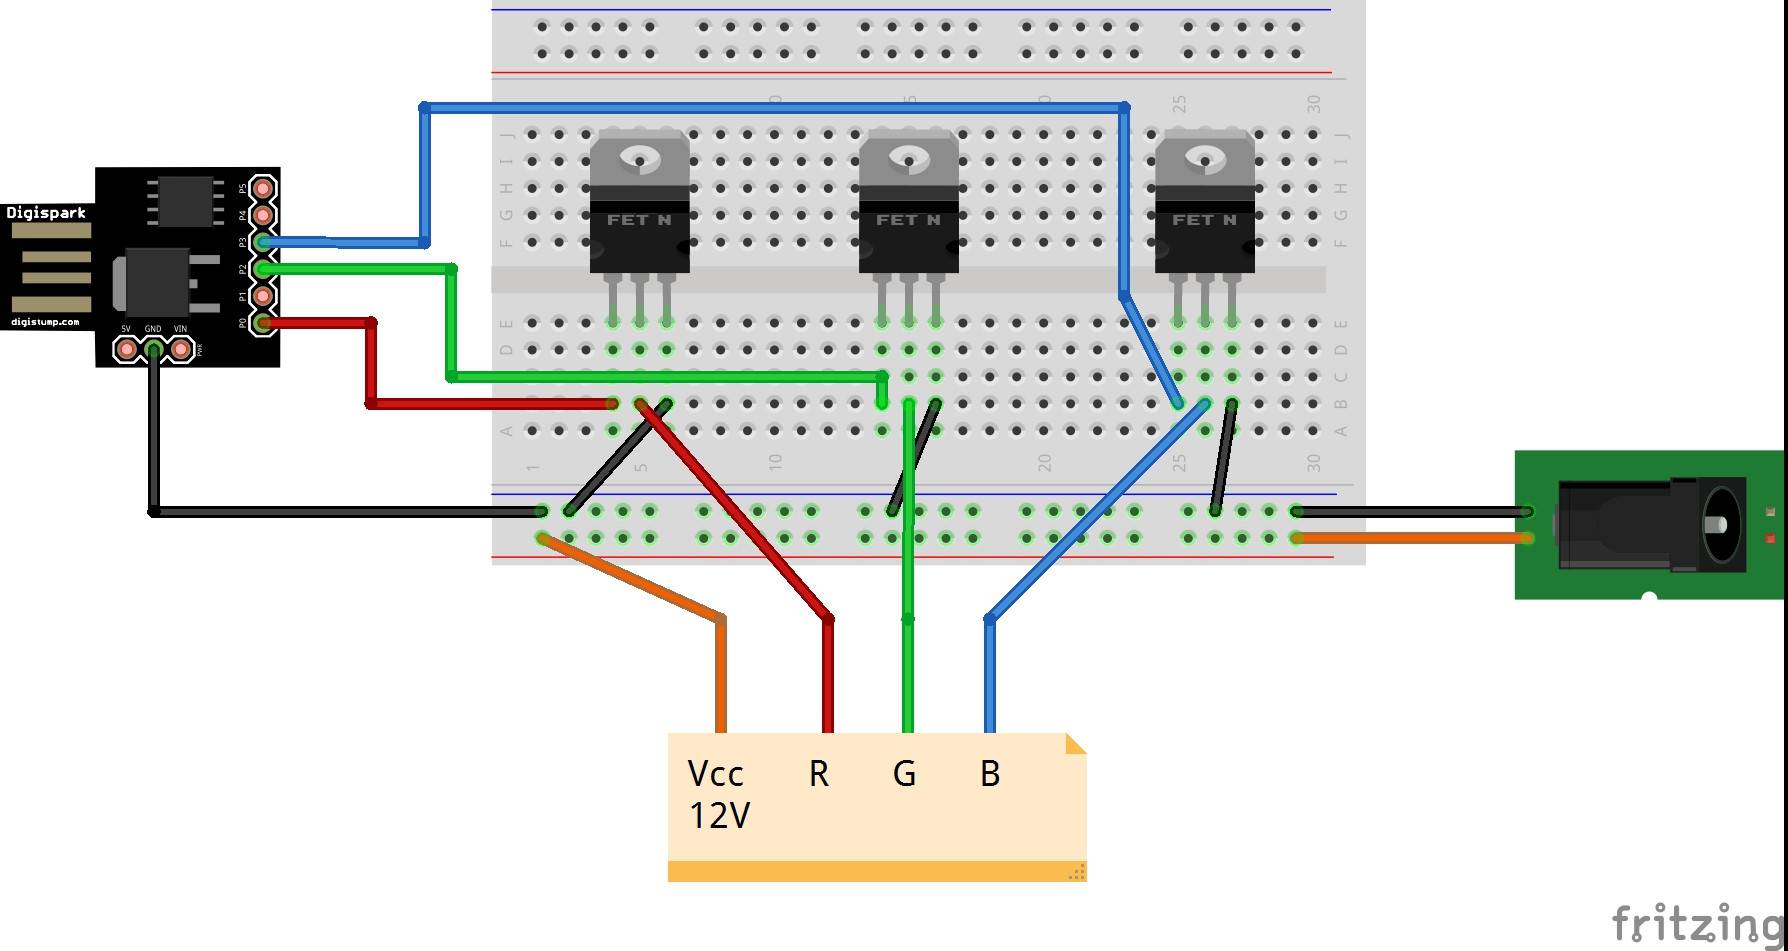 Адресная светодиодная лента и её подключение к arduino